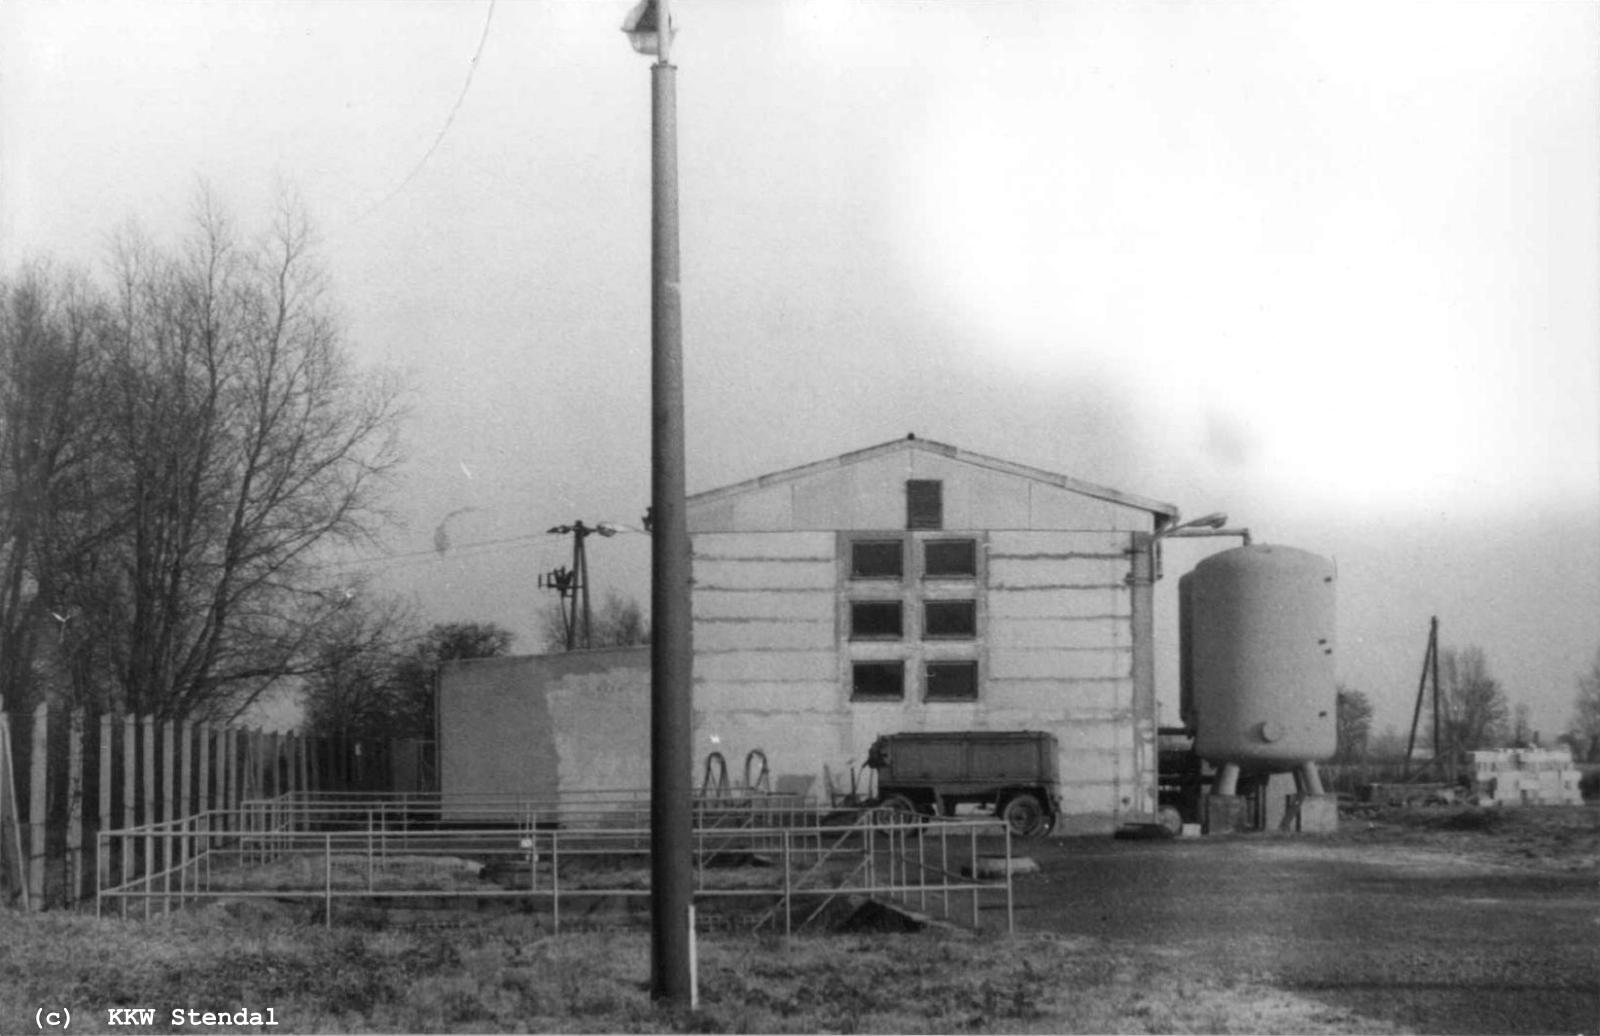  AKW Stendal, Baustelle 1988, Wasserwerk Altenzaun II 